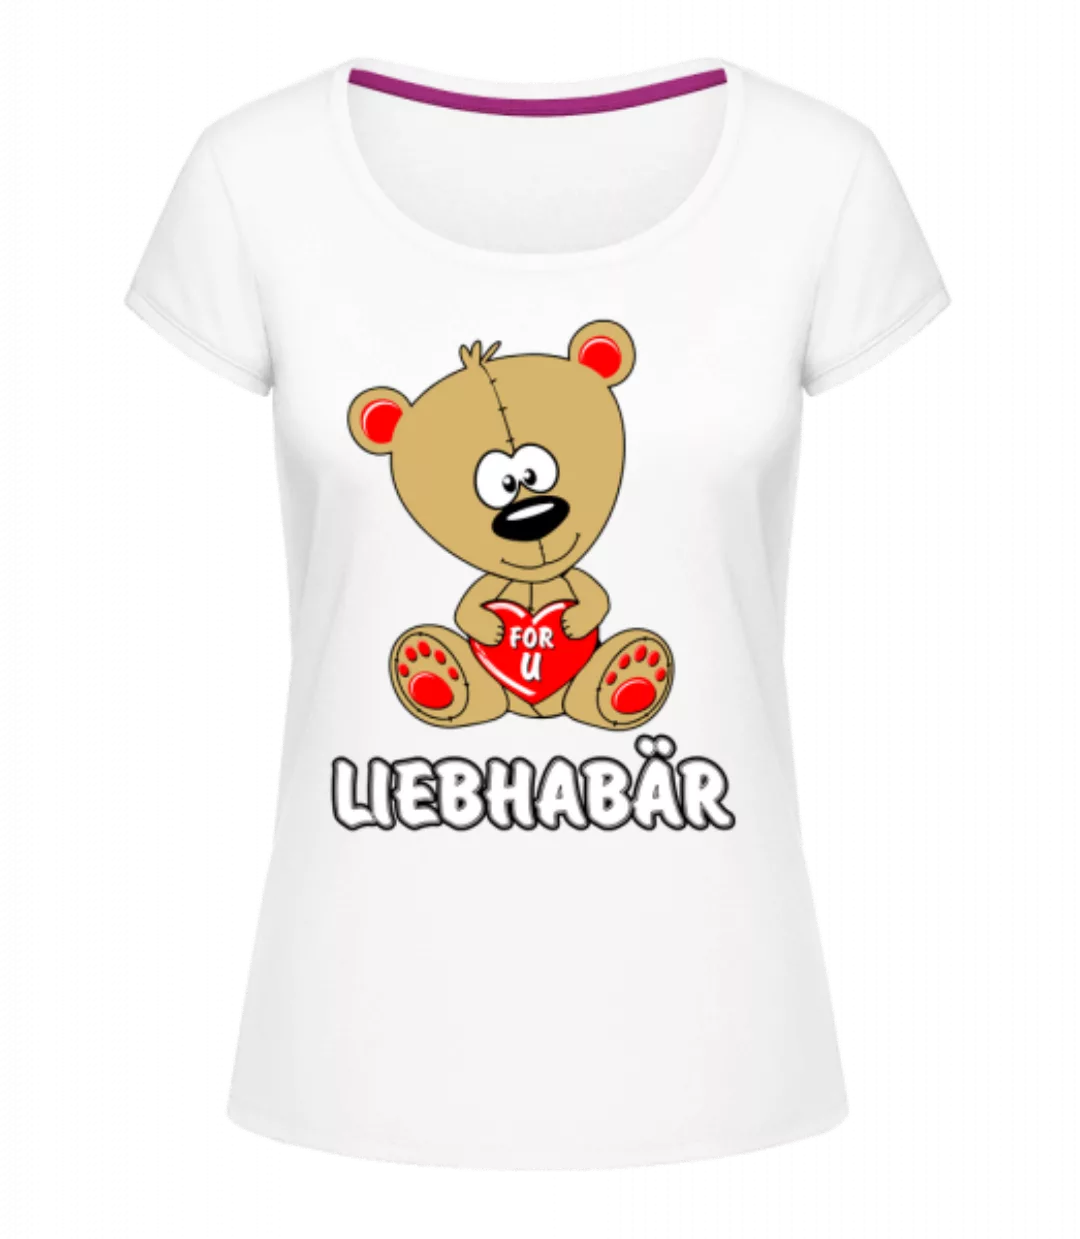 Liebhabär · Frauen T-Shirt U-Ausschnitt günstig online kaufen